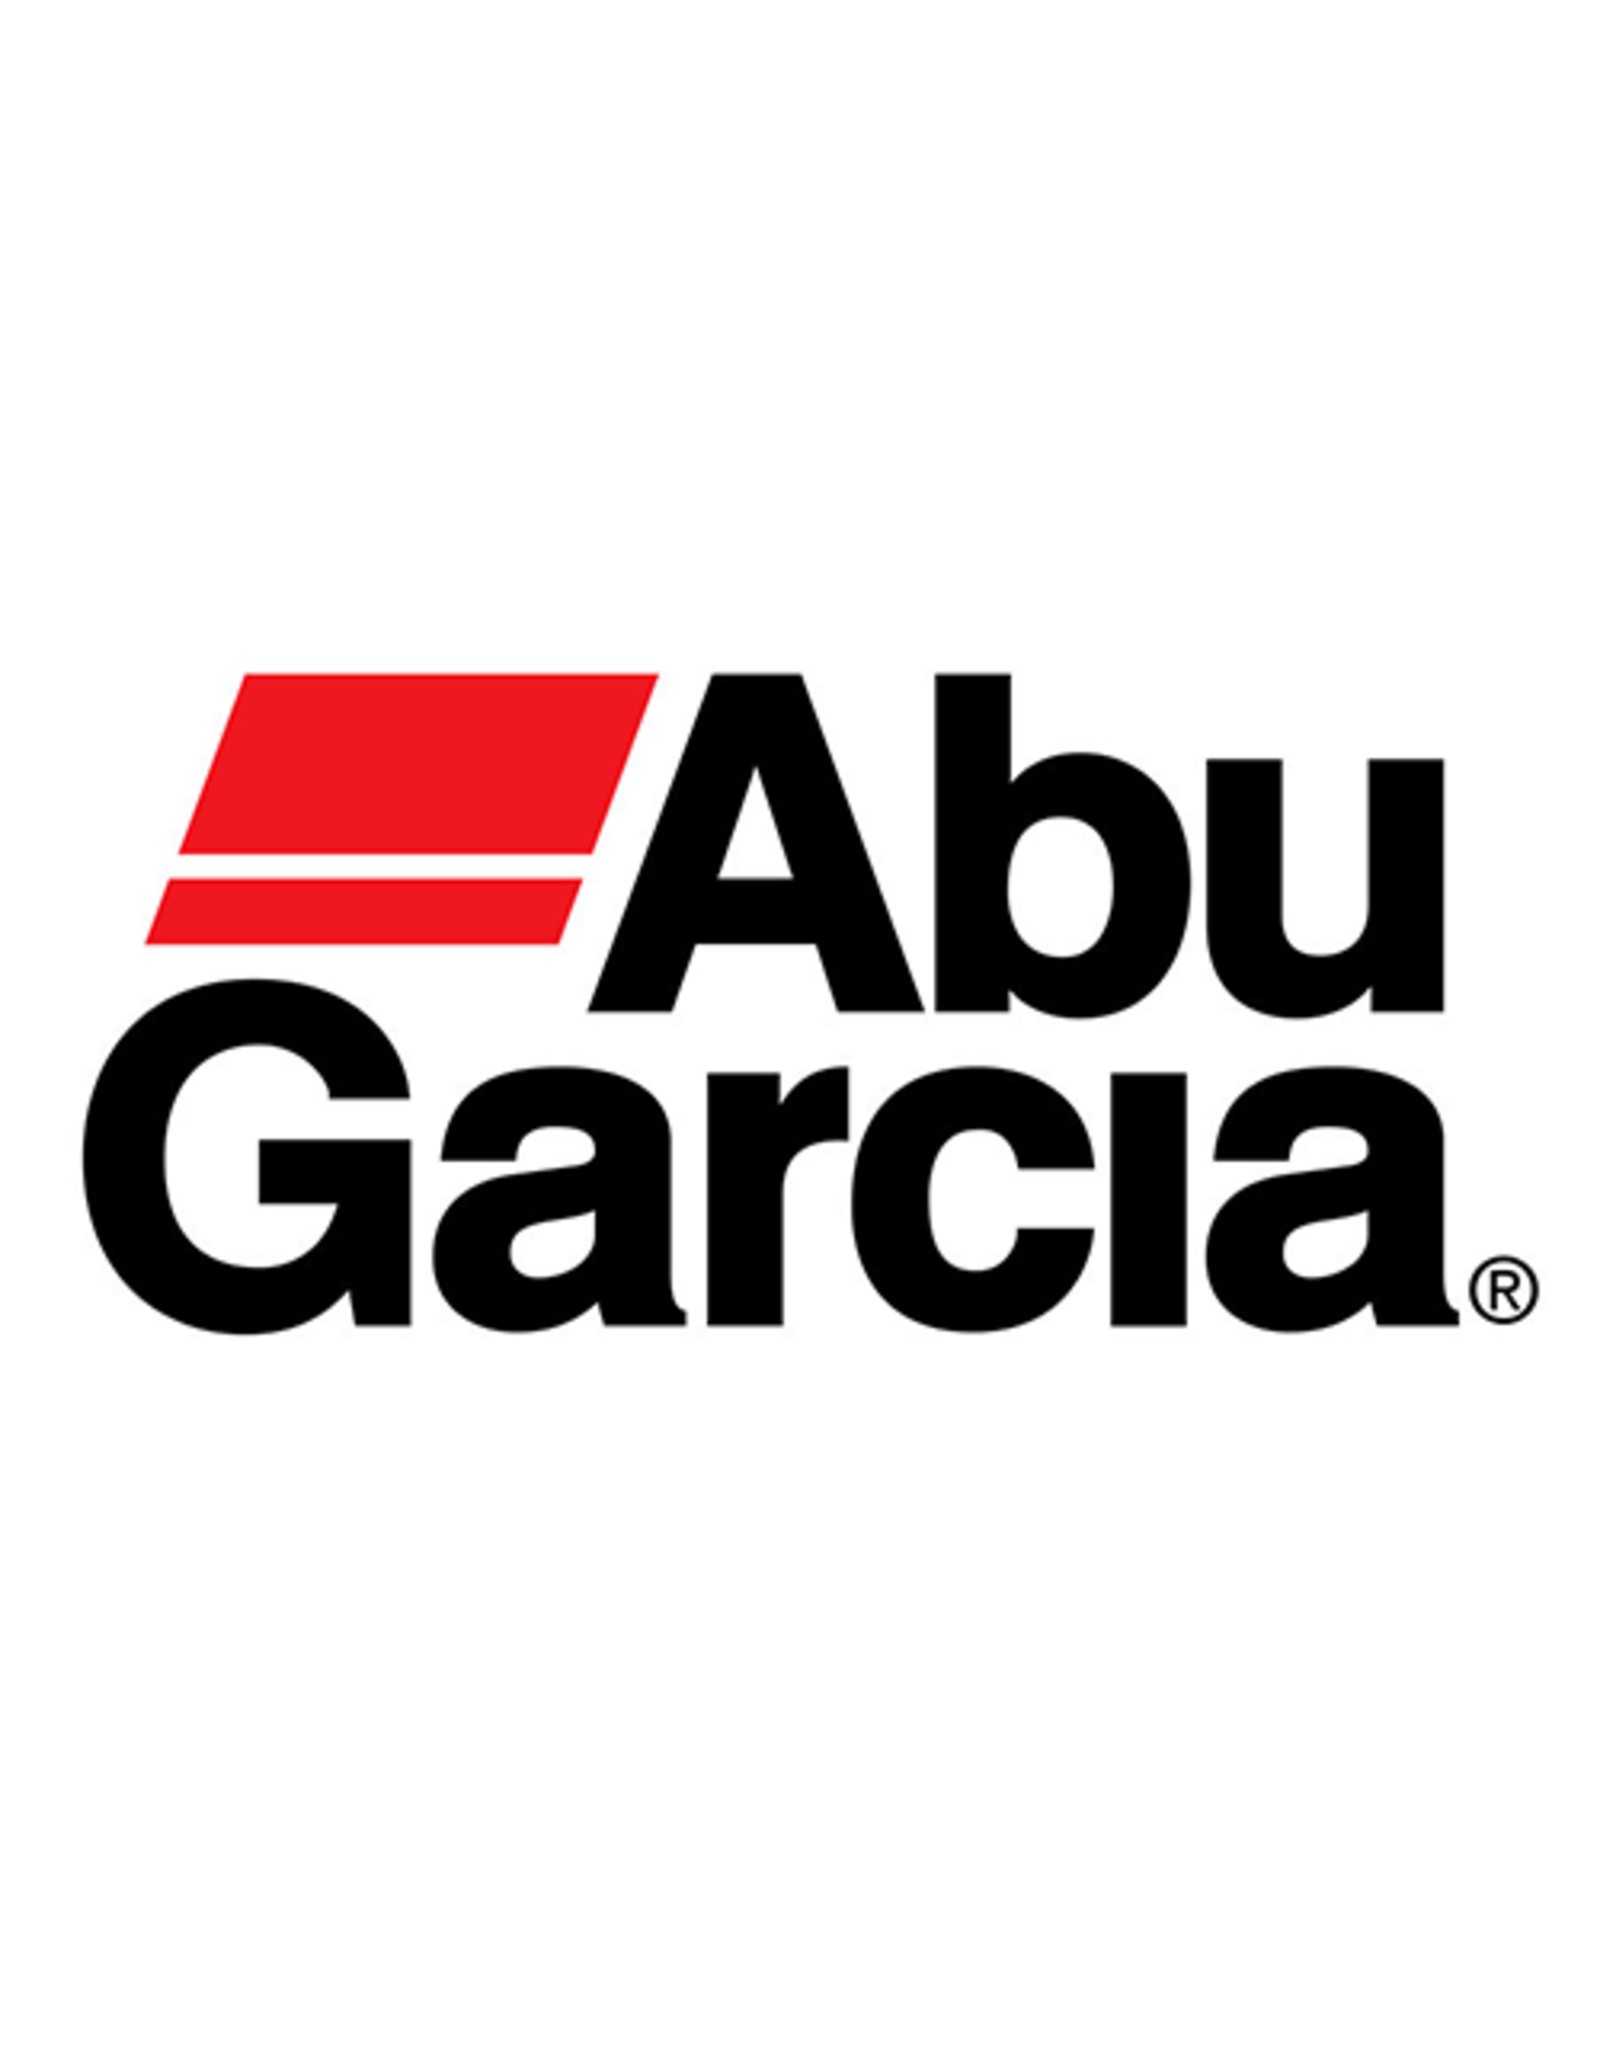 Abu Garcia 977655  C CLIP/NLA